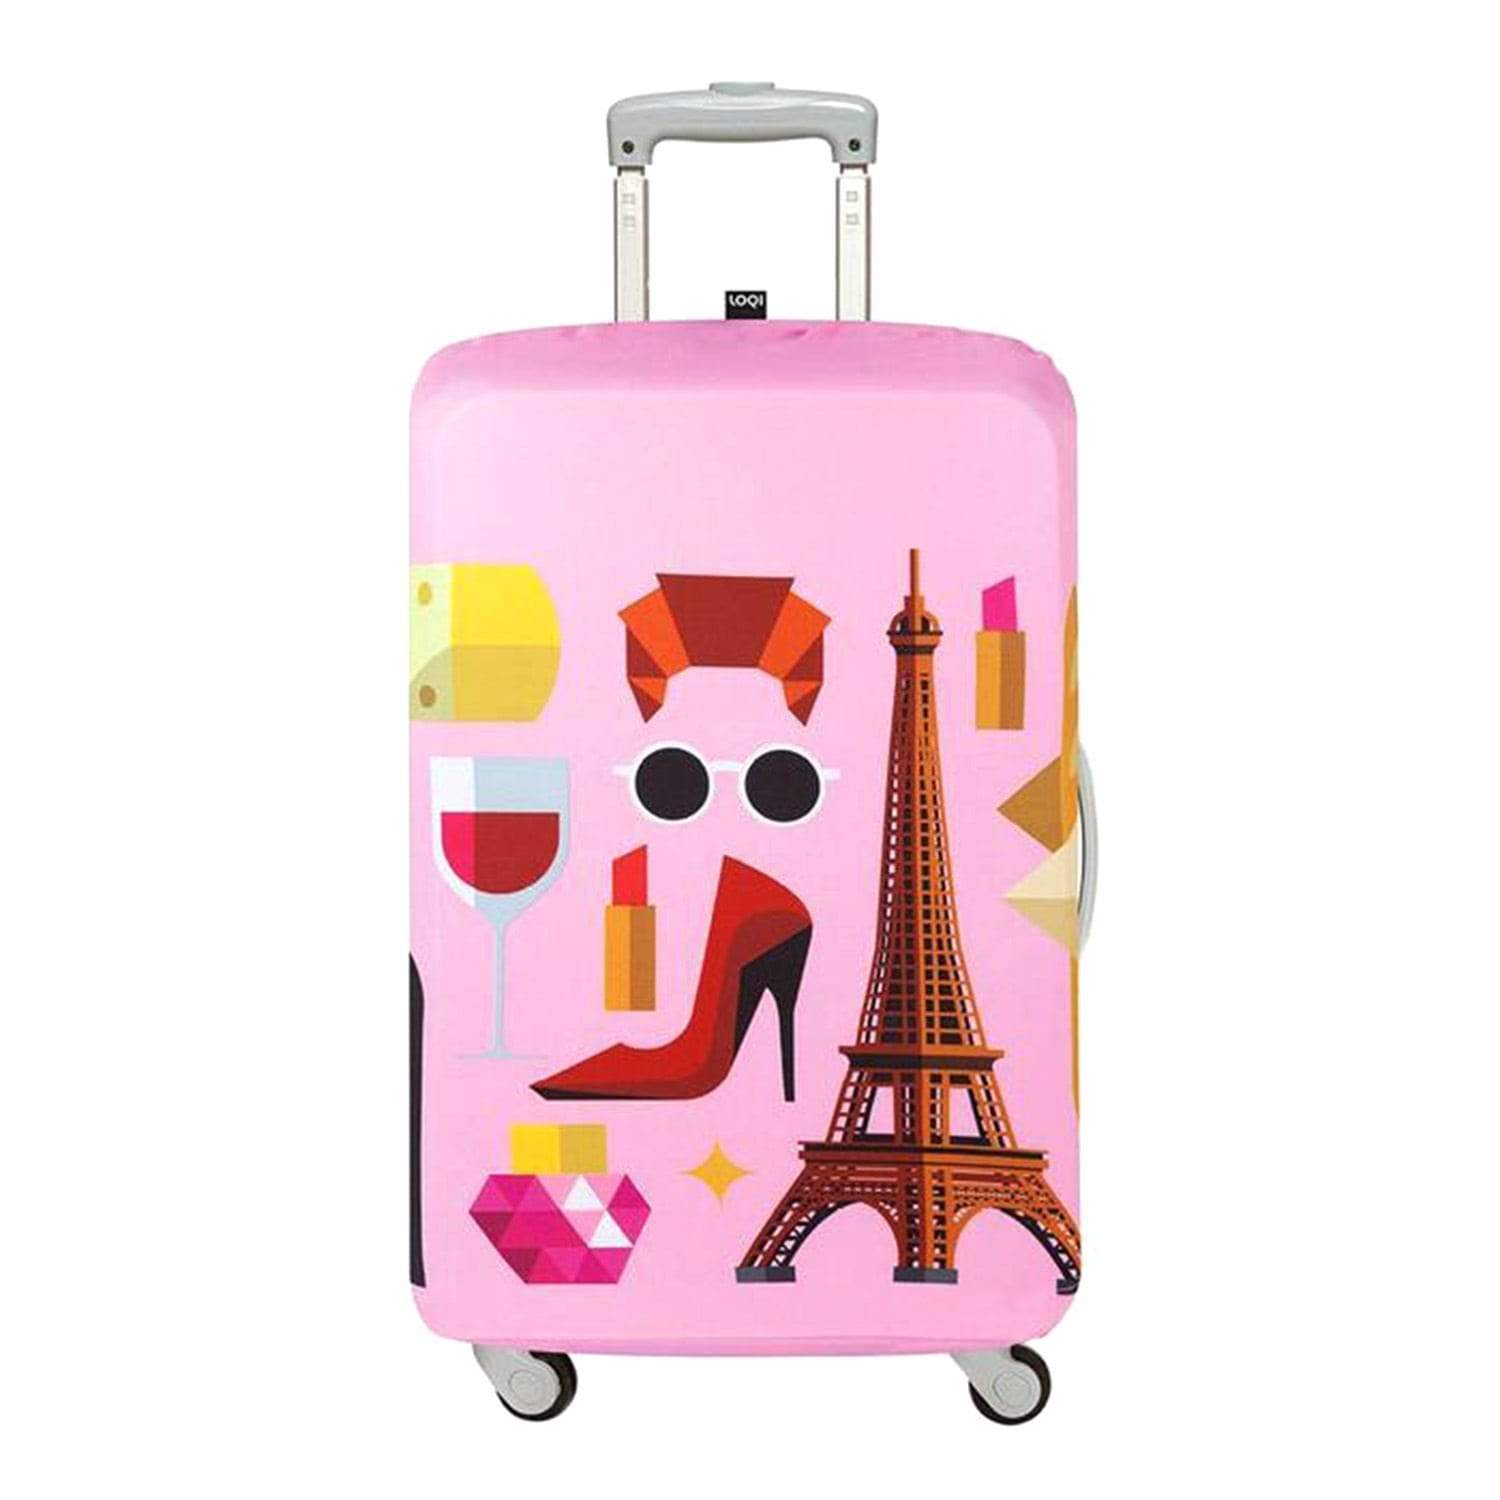 غطاء حقائب لوقي أرتيست هاي ستوديو باريس - وردي، صغير - LS.HEY.PA - Jashanmal Home